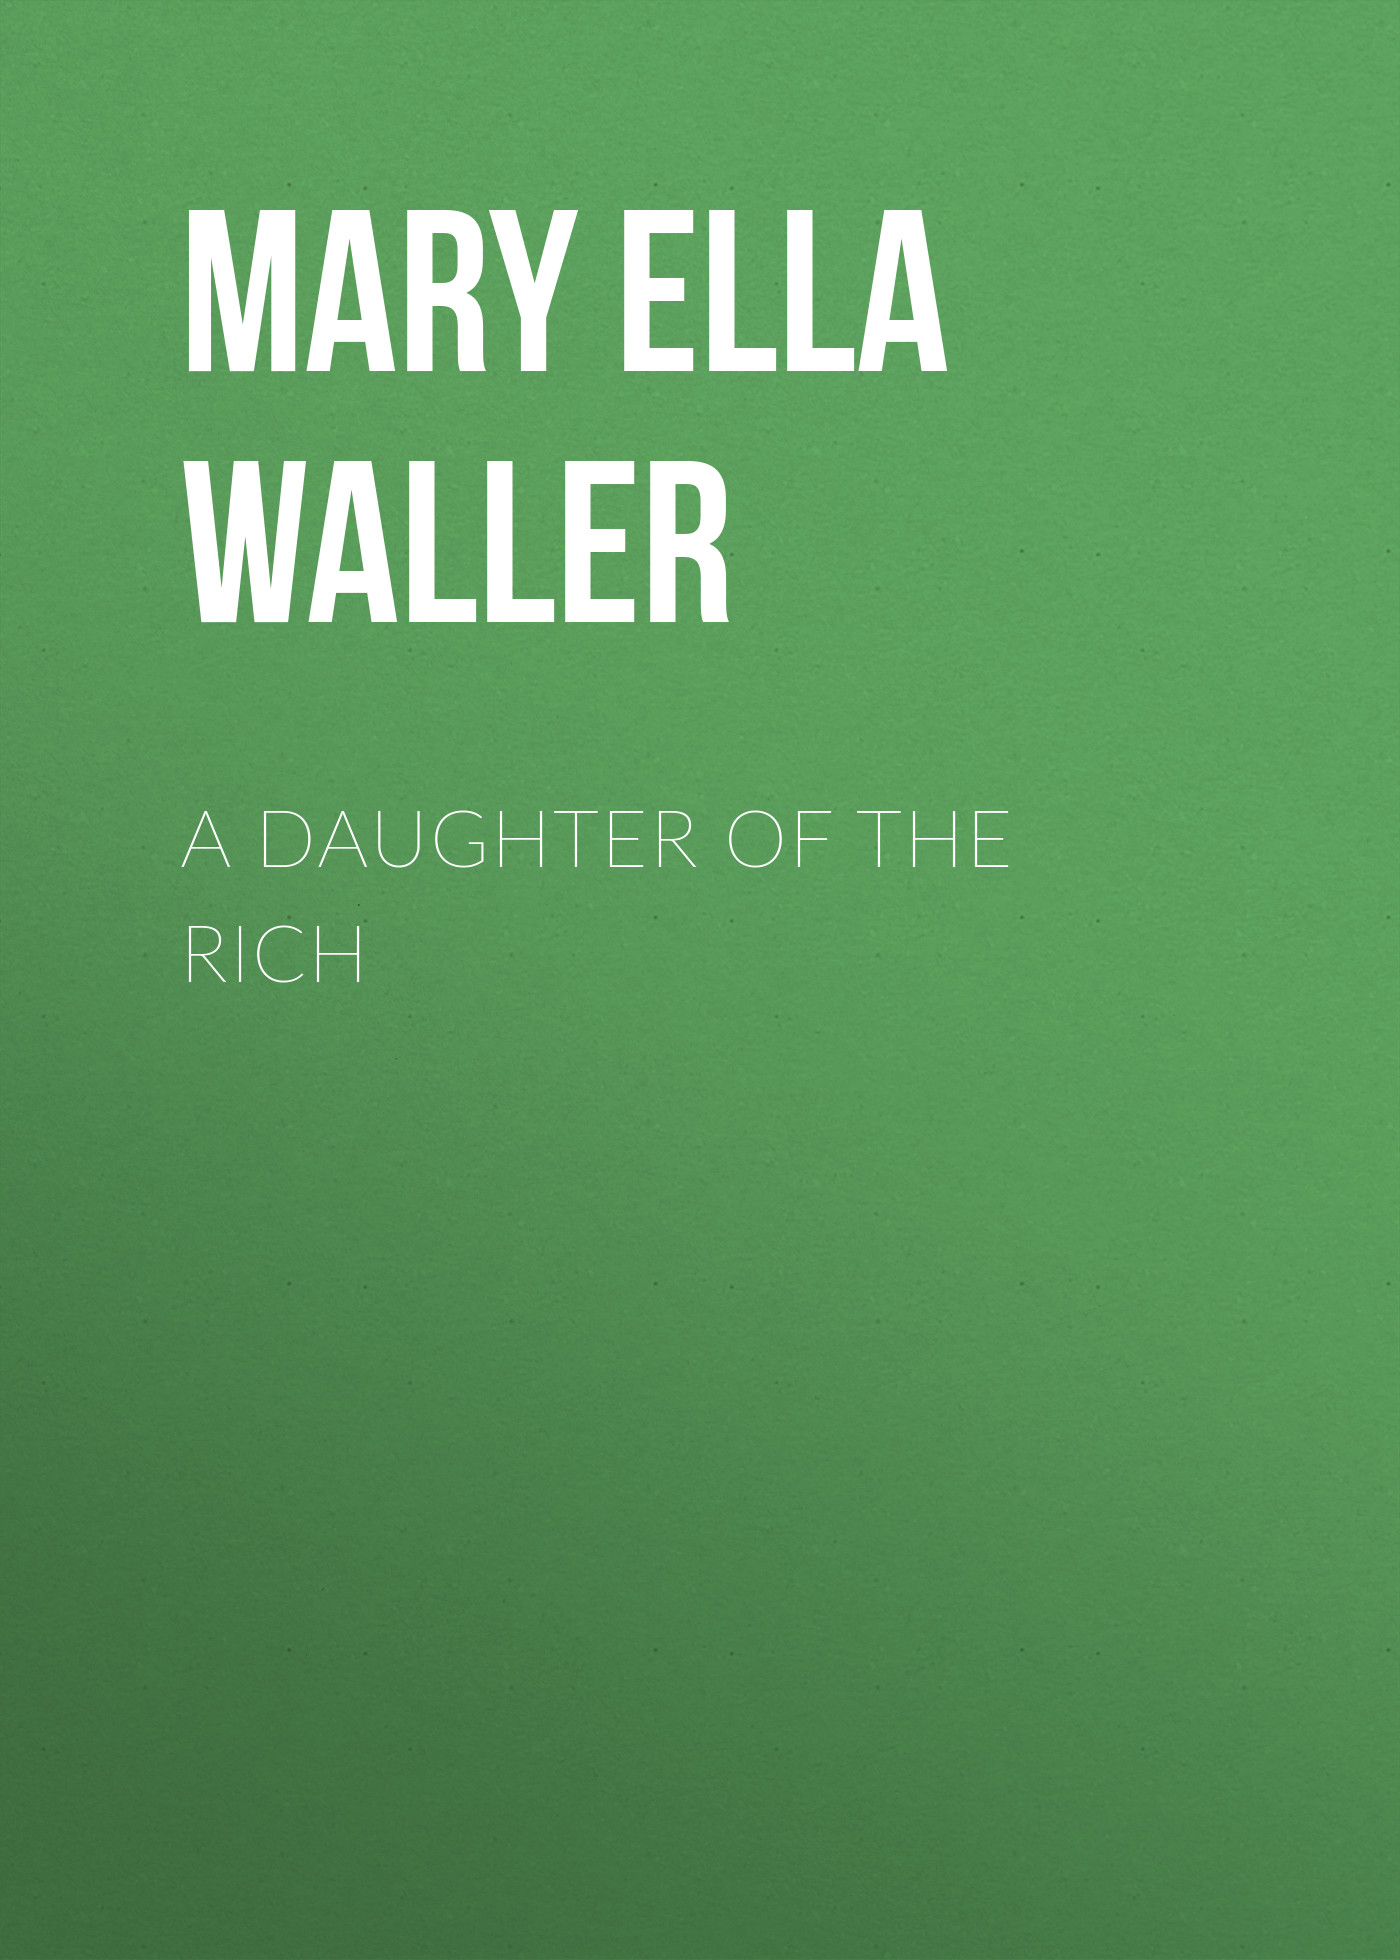 Книга A Daughter of the Rich из серии , созданная Mary Waller, может относится к жанру Зарубежная классика, Зарубежная старинная литература. Стоимость электронной книги A Daughter of the Rich с идентификатором 34282440 составляет 0 руб.